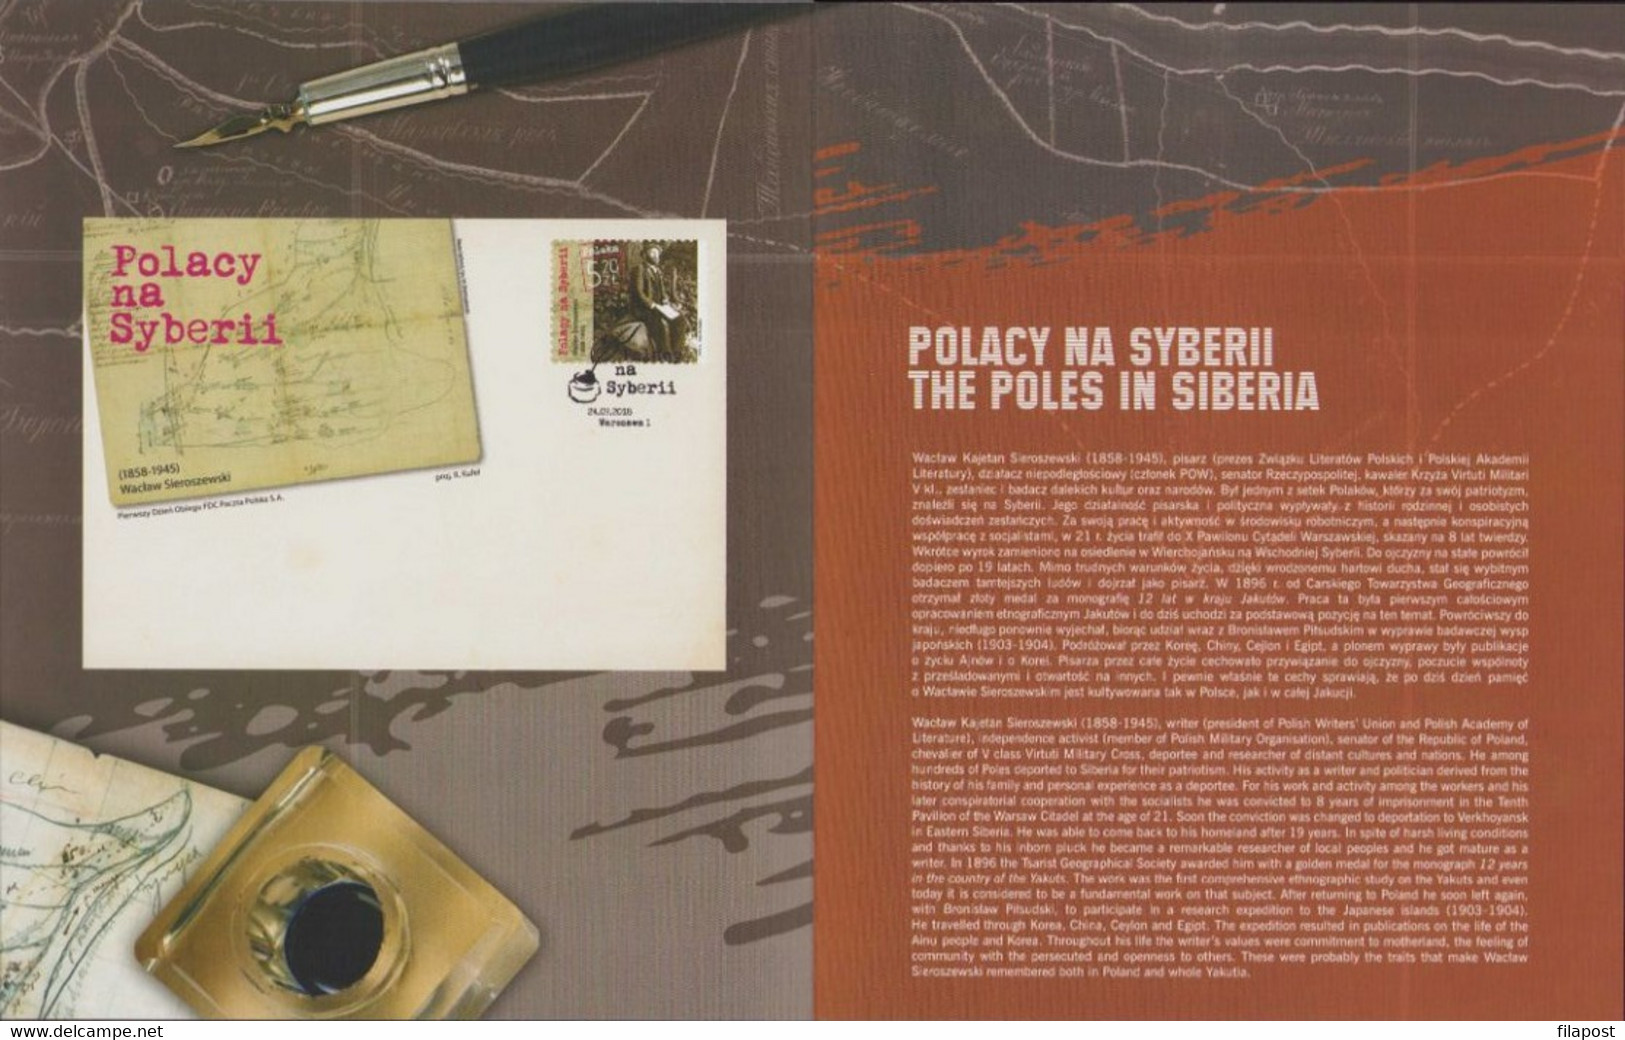 POLAND 2018 Booklet / Mi 5015 / The Poles In Siberia, Waclaw Sieroszewski / Stamp MNH** FV - Carnets